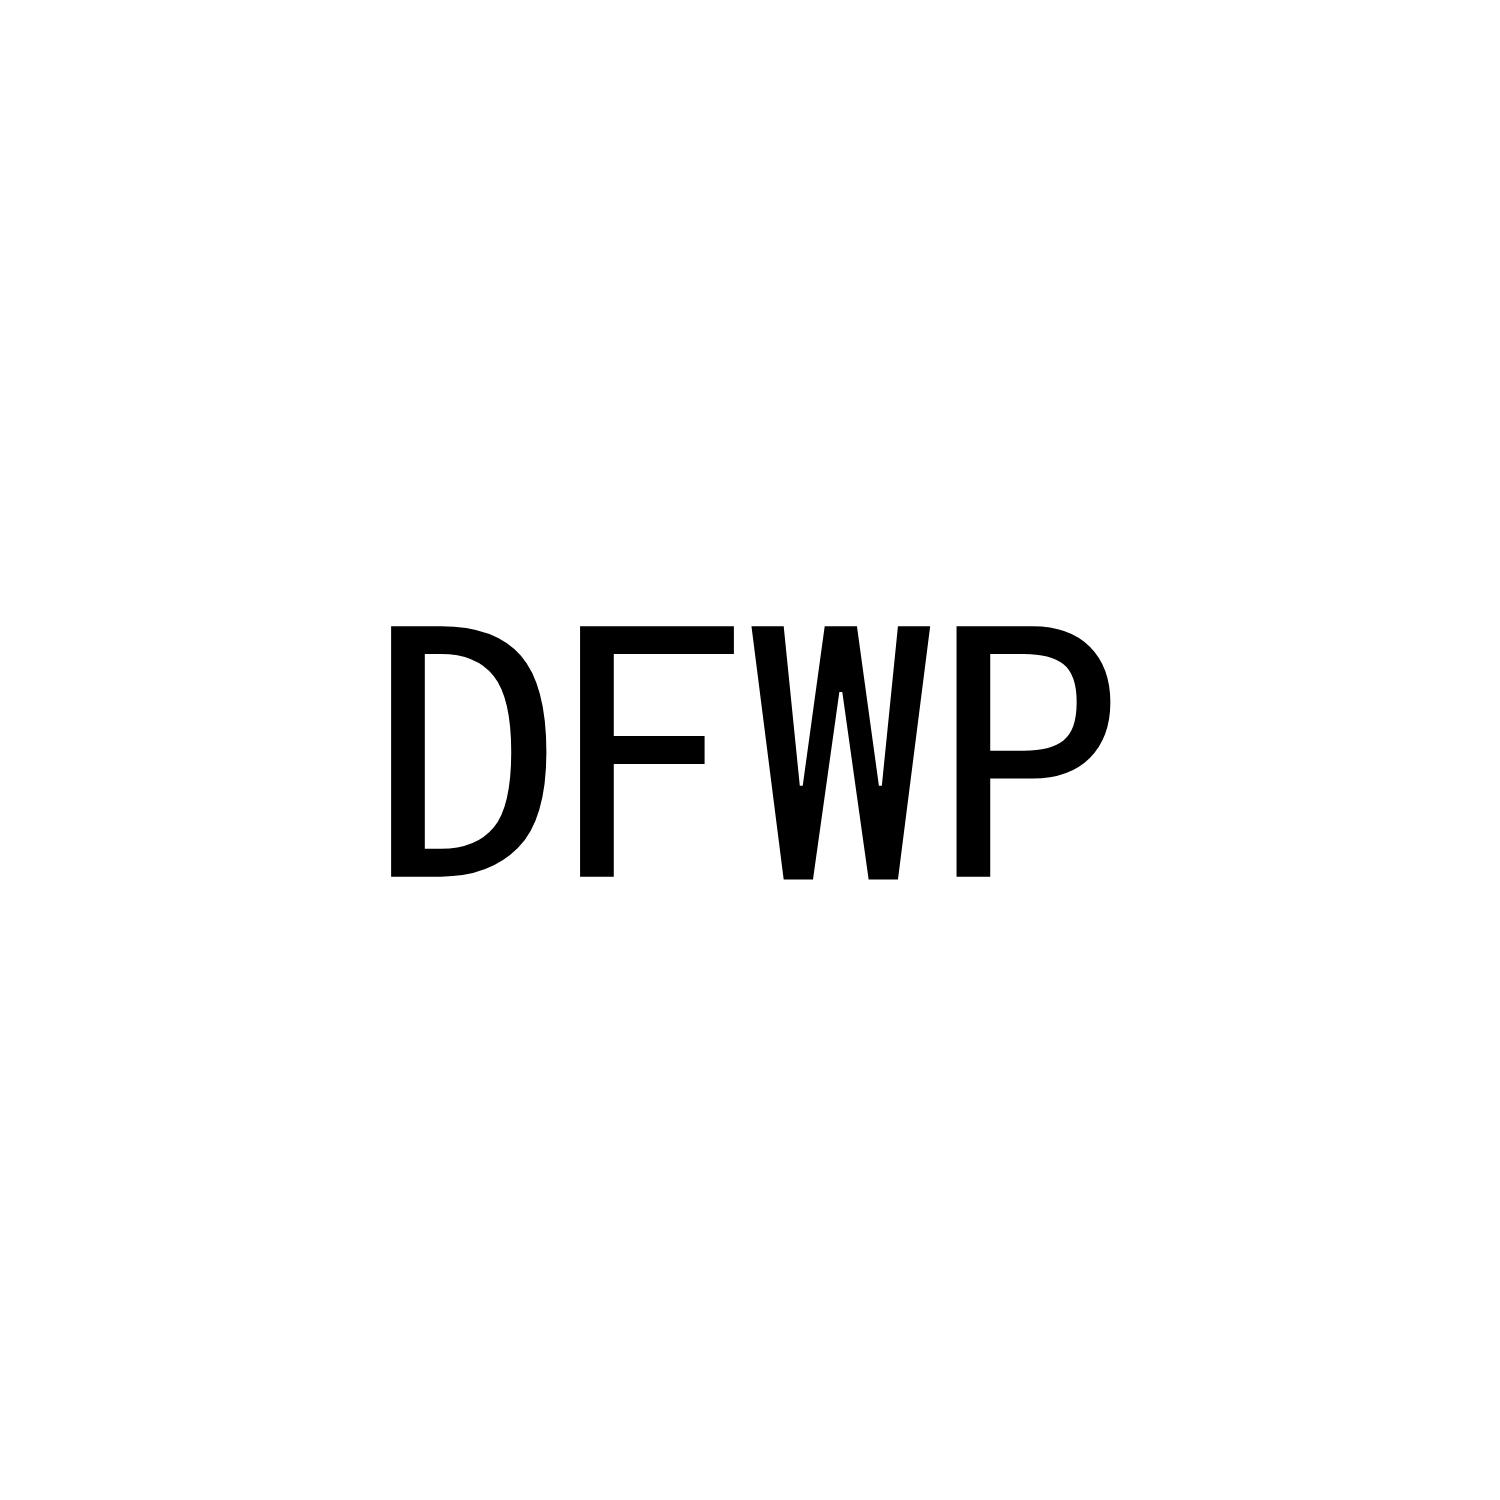 DFWP